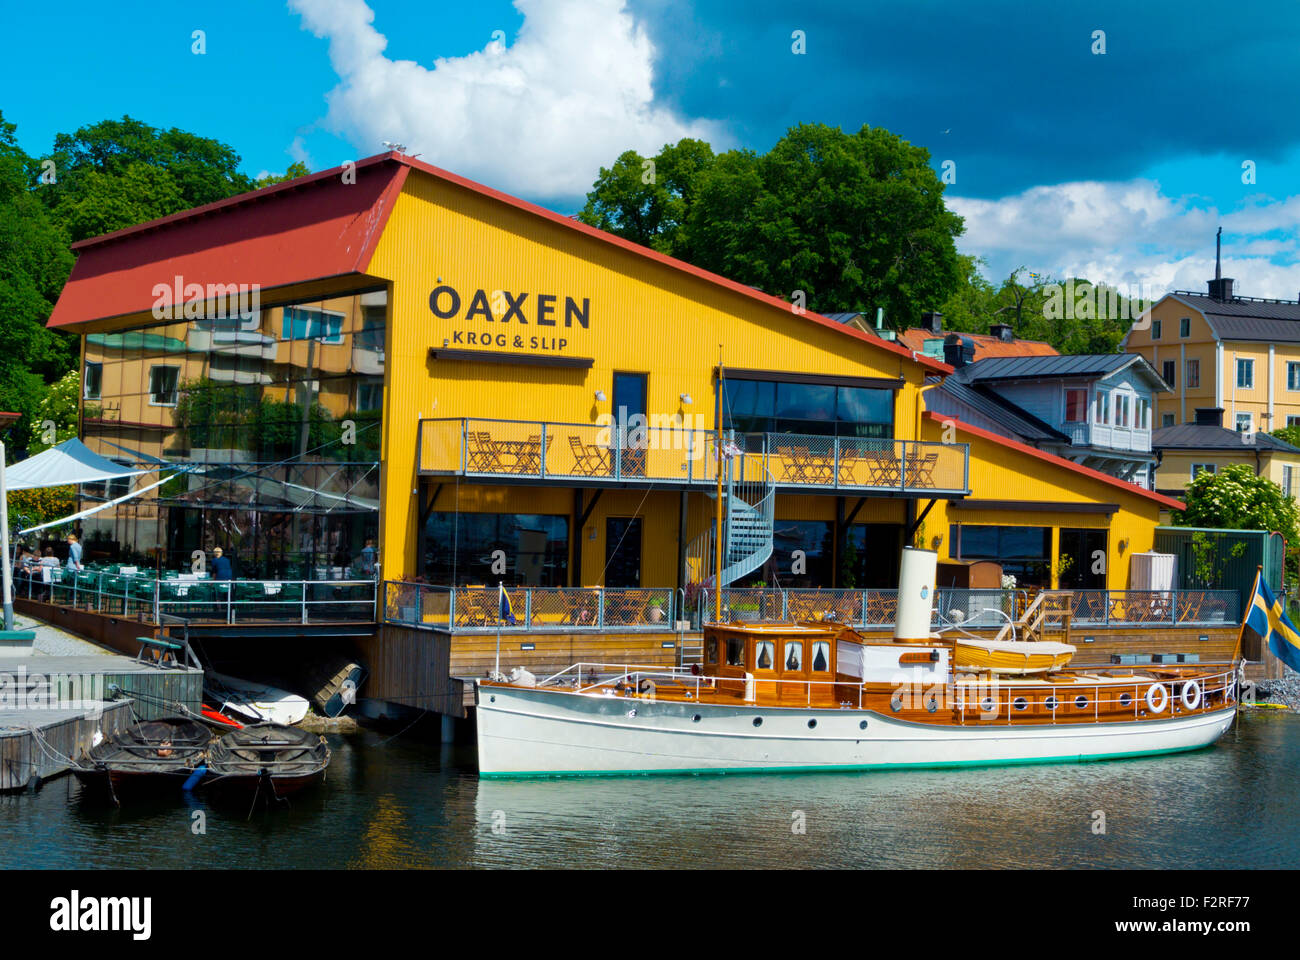 Oaxen restaurant, Beckholmsvägen, on shore of Beckholmssundet bay, Djurgården island, Stockholm, Sweden Stock Photo